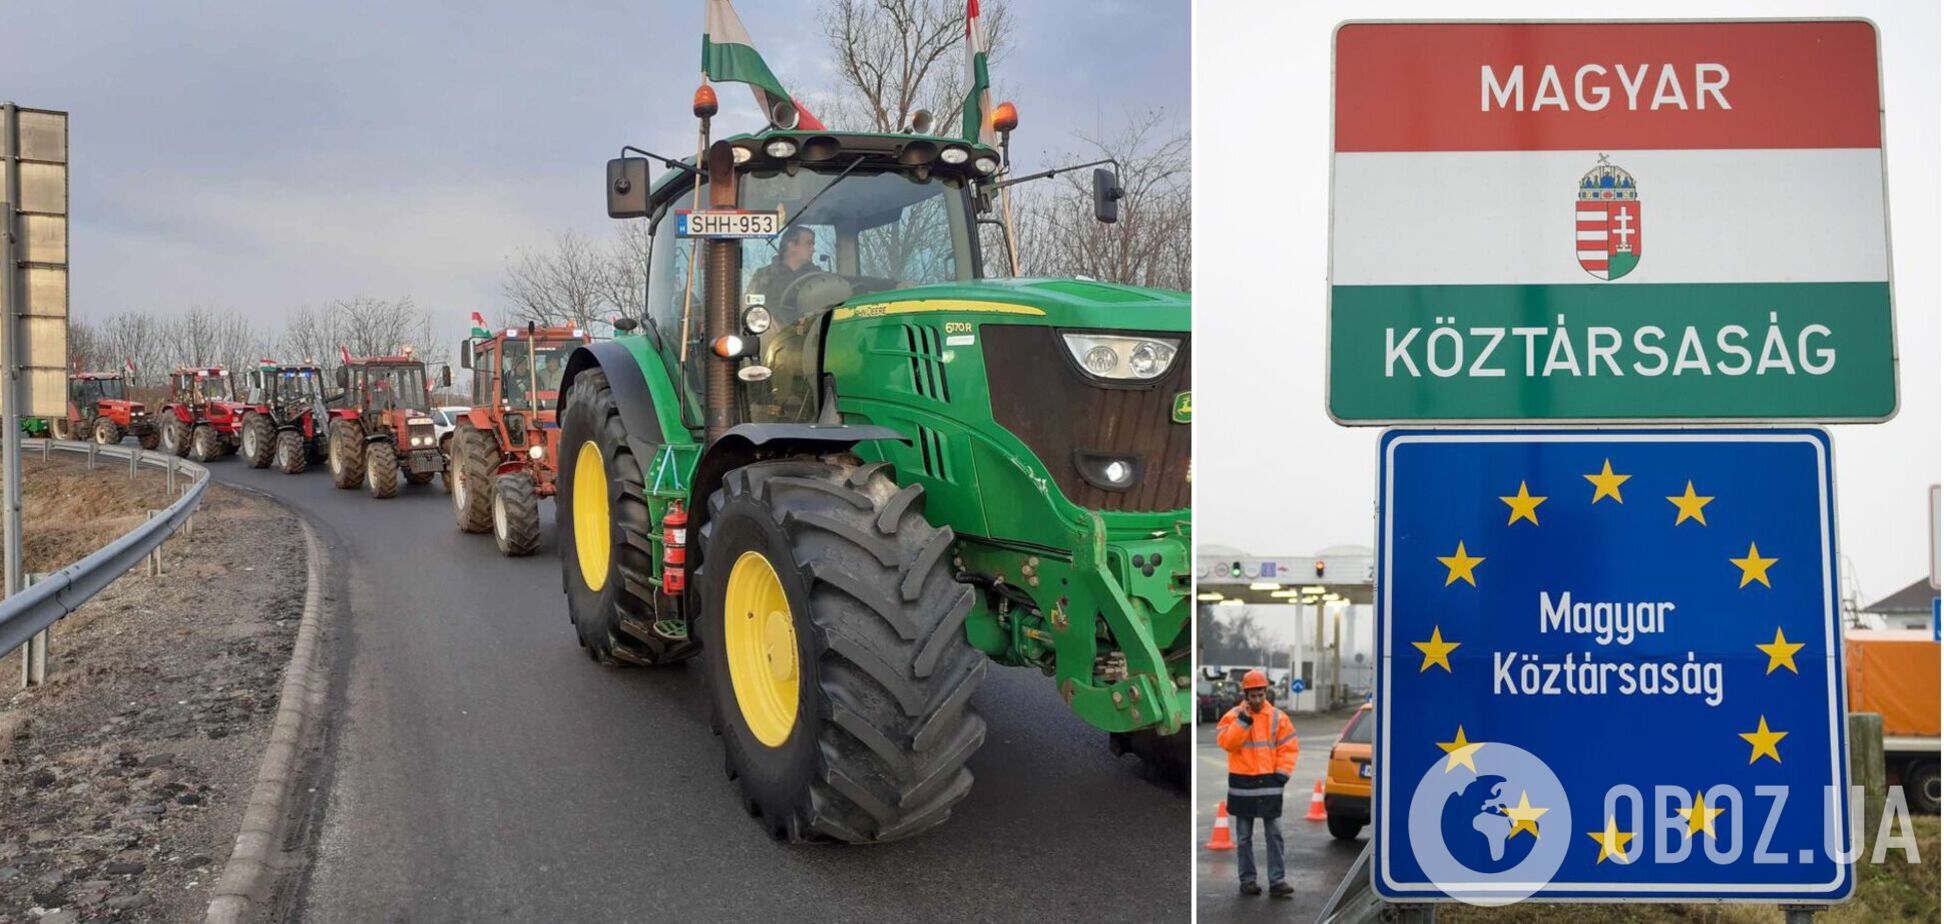 На границы Украины и Венгрии состоялась акция протеста